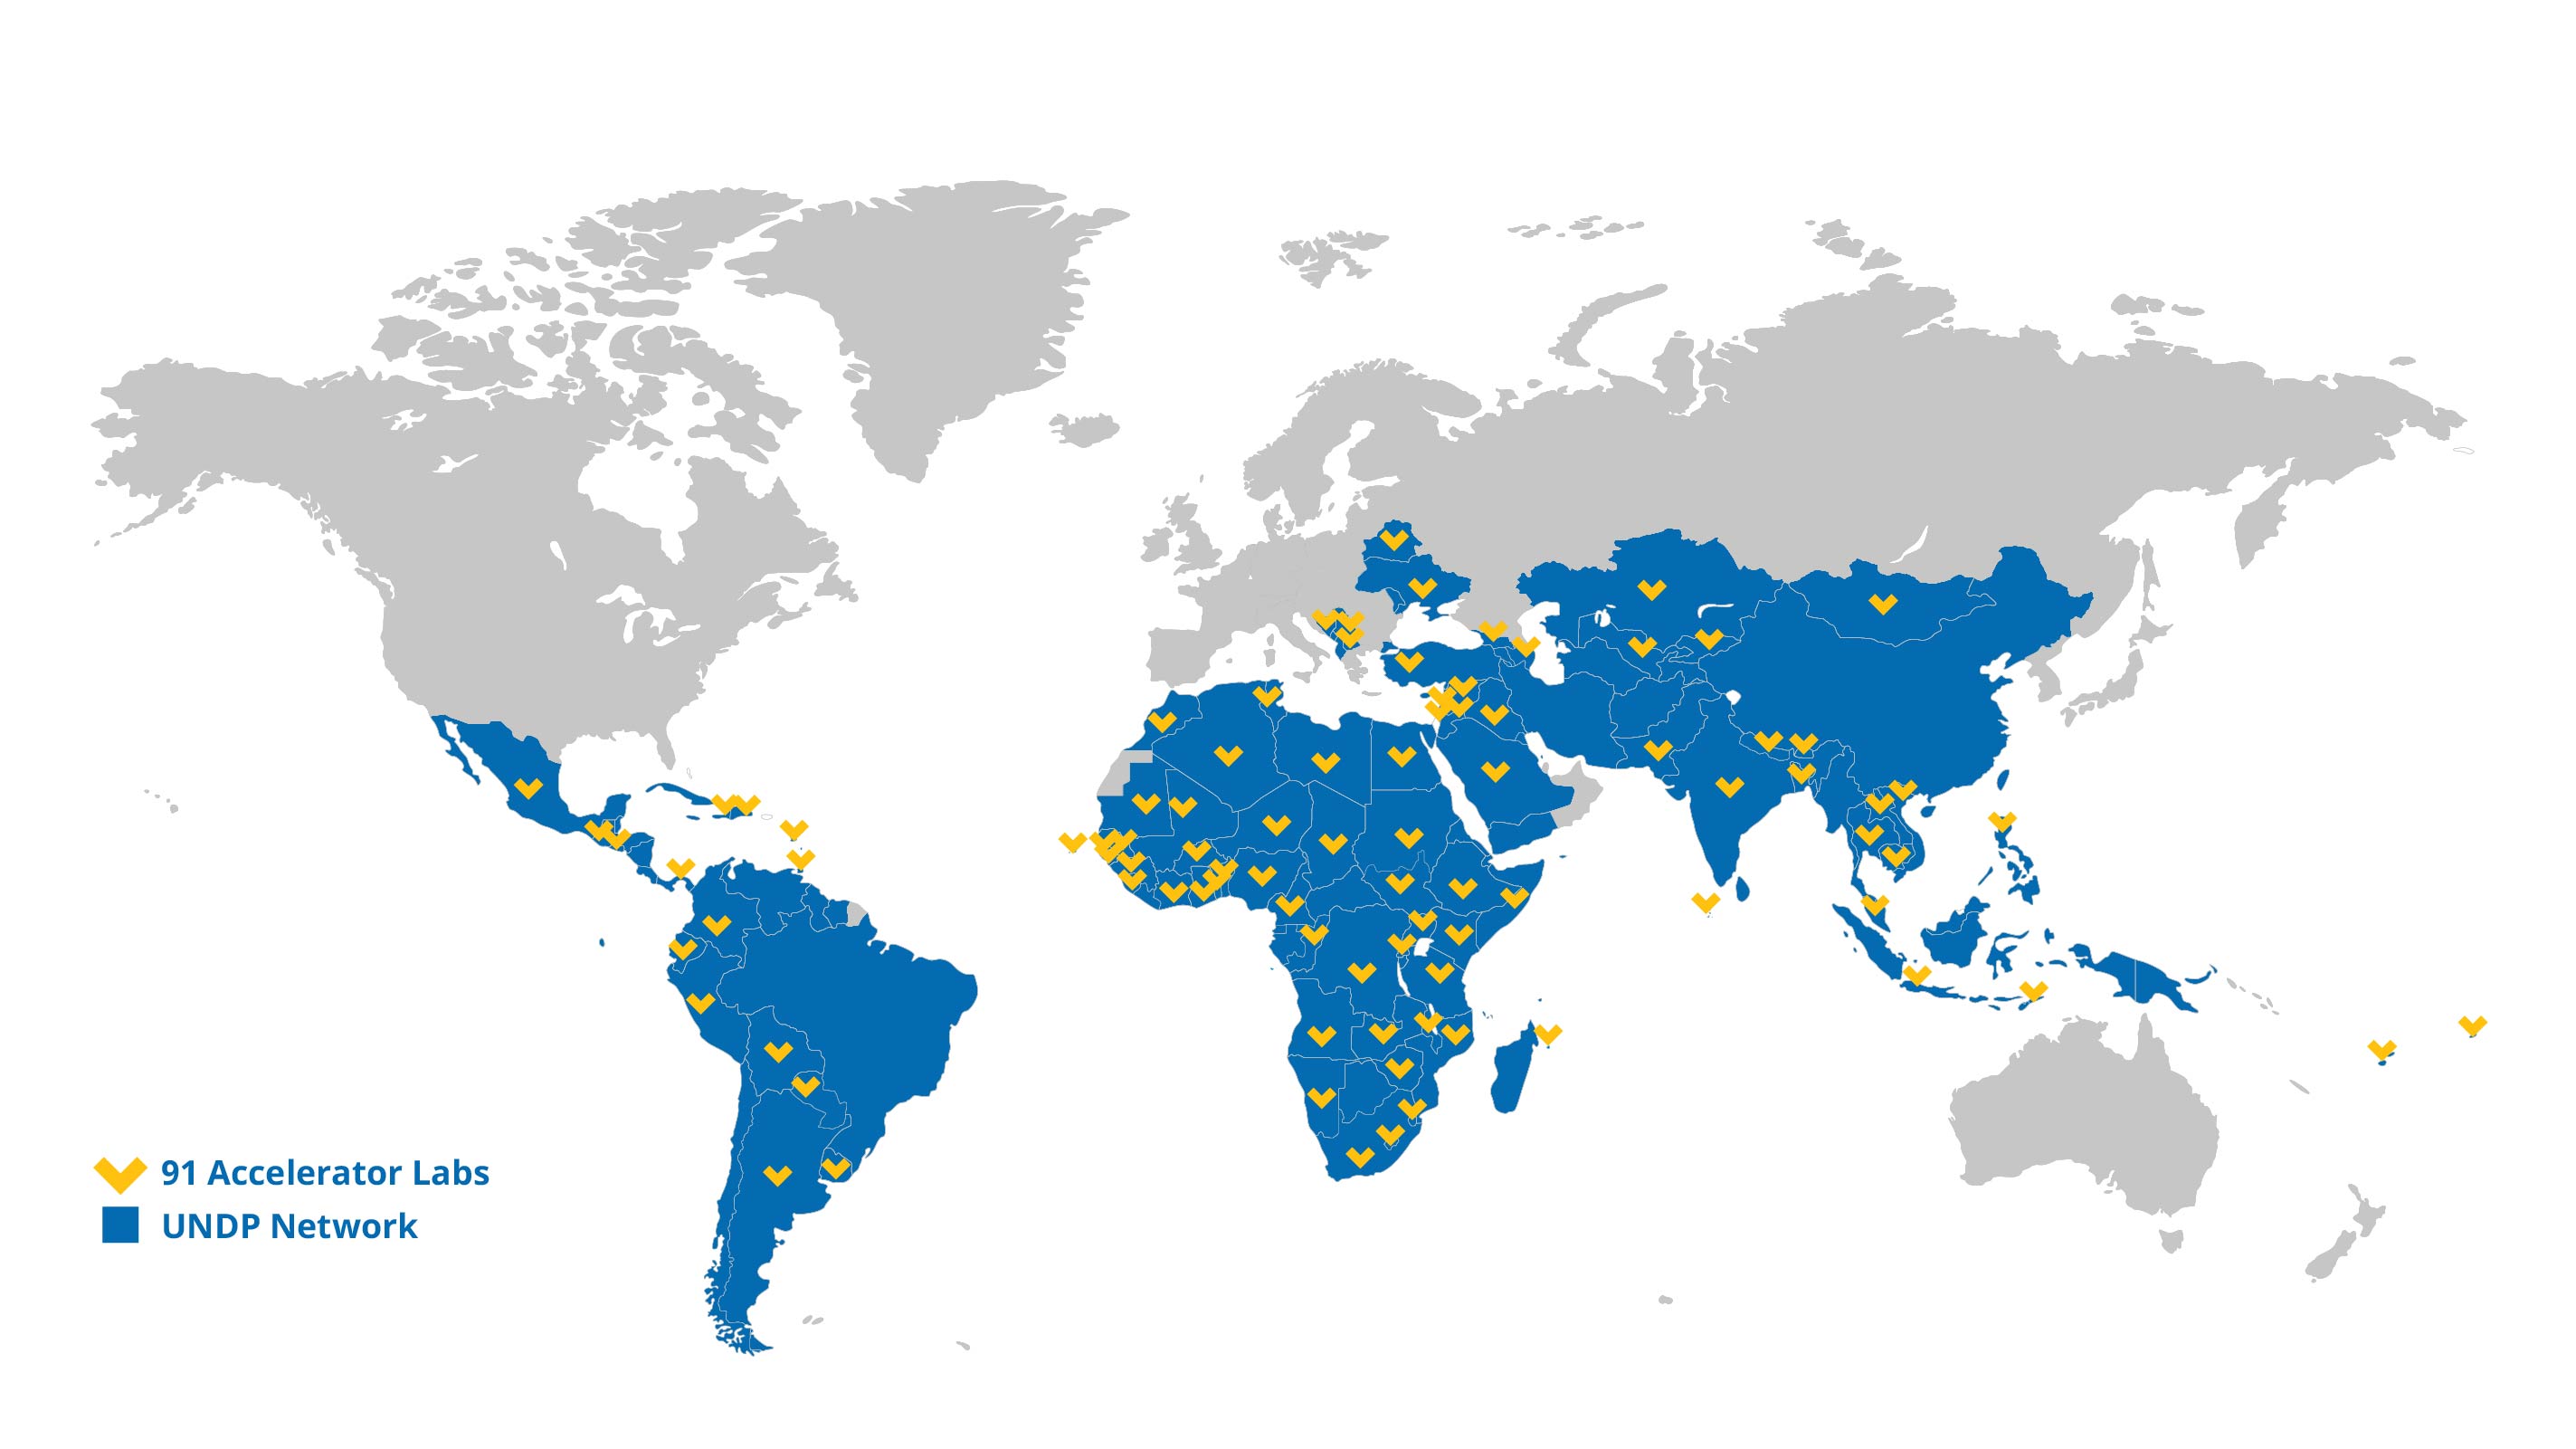 Mapa mundial con ubicación de laboratorios de aceleración del PNUD